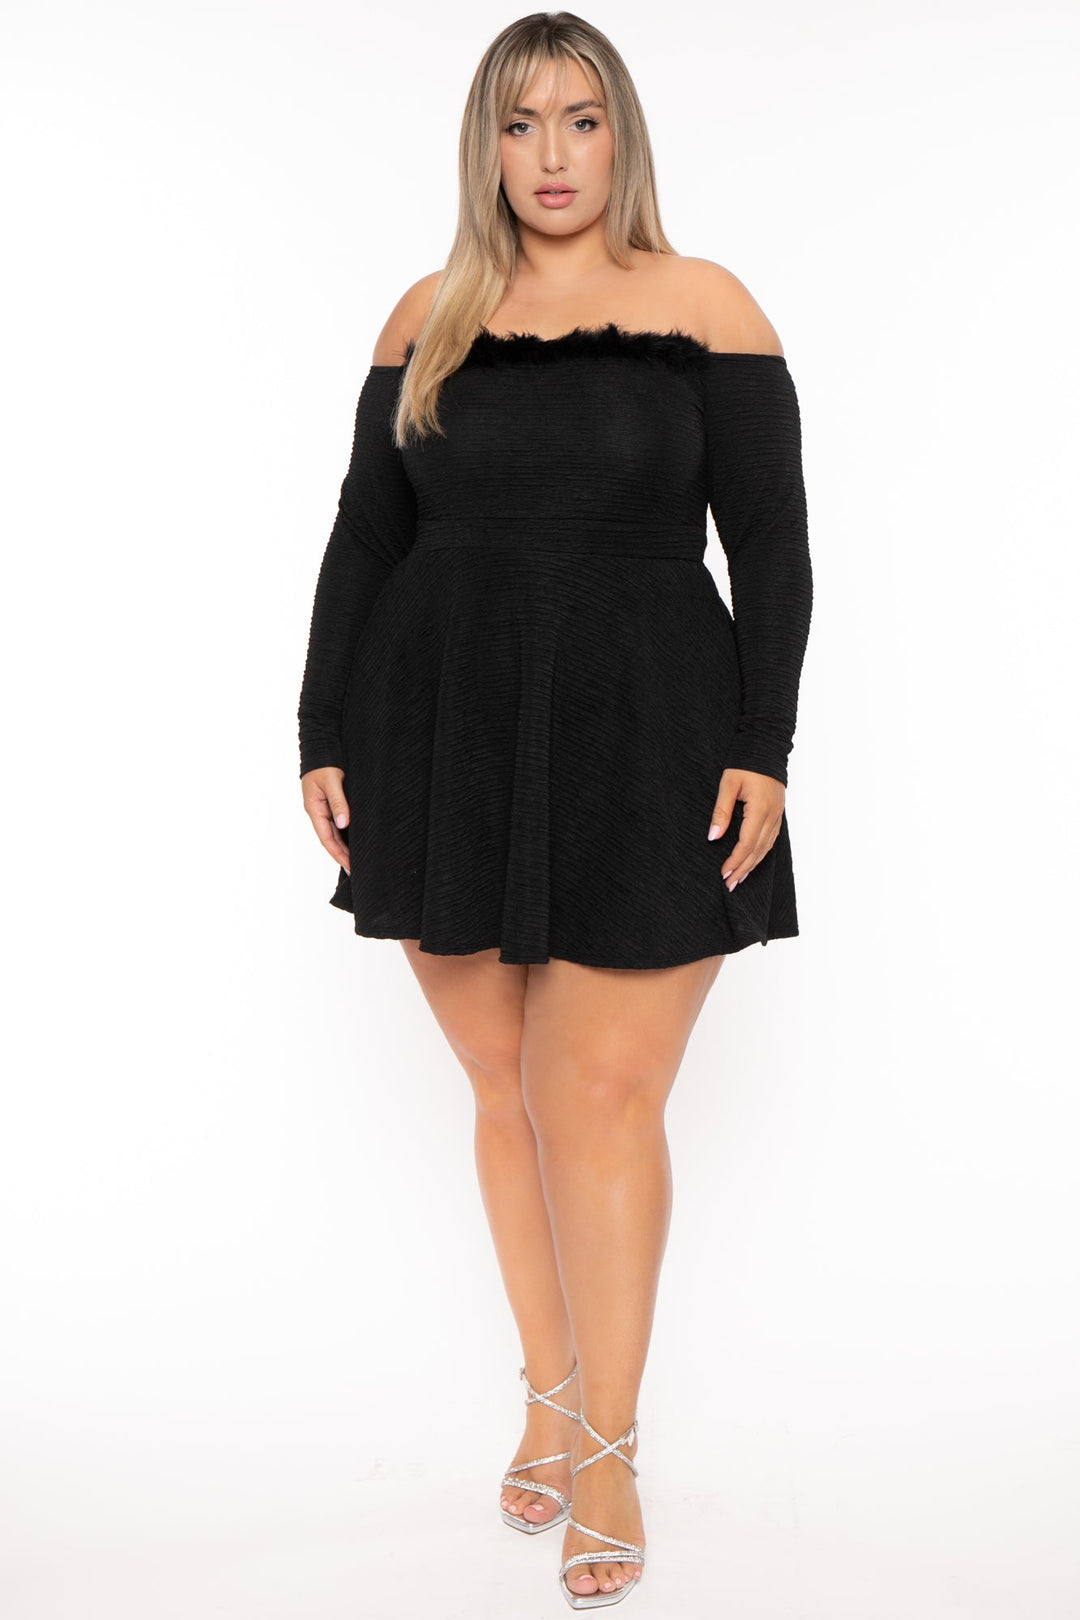 Plus Size Vivian Boa Flare Dress - Black